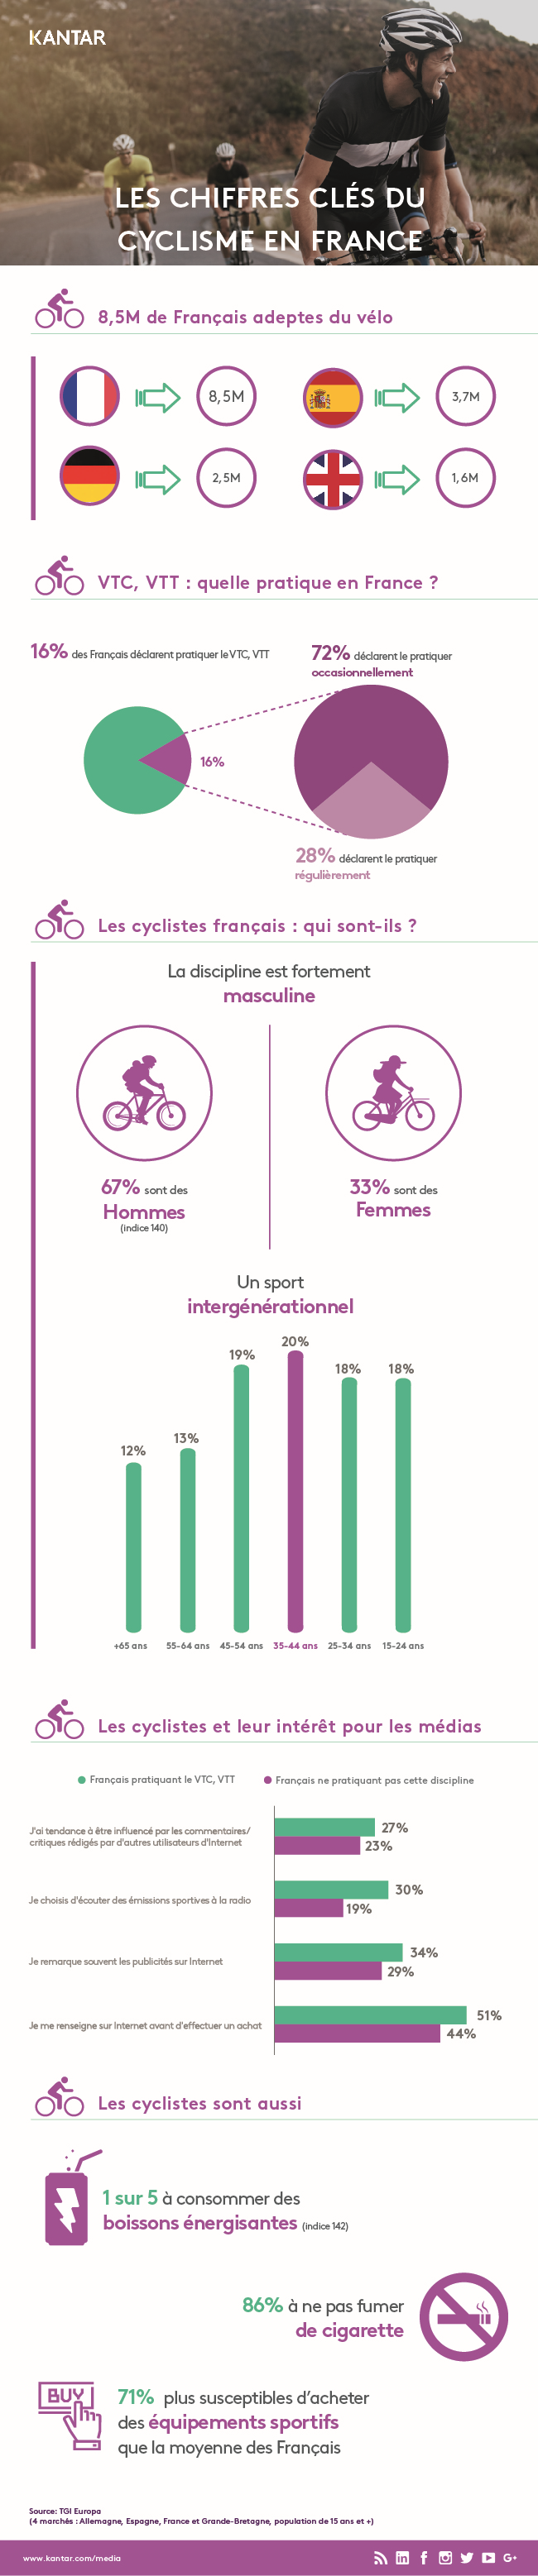 Infographie Cyclisme 2019